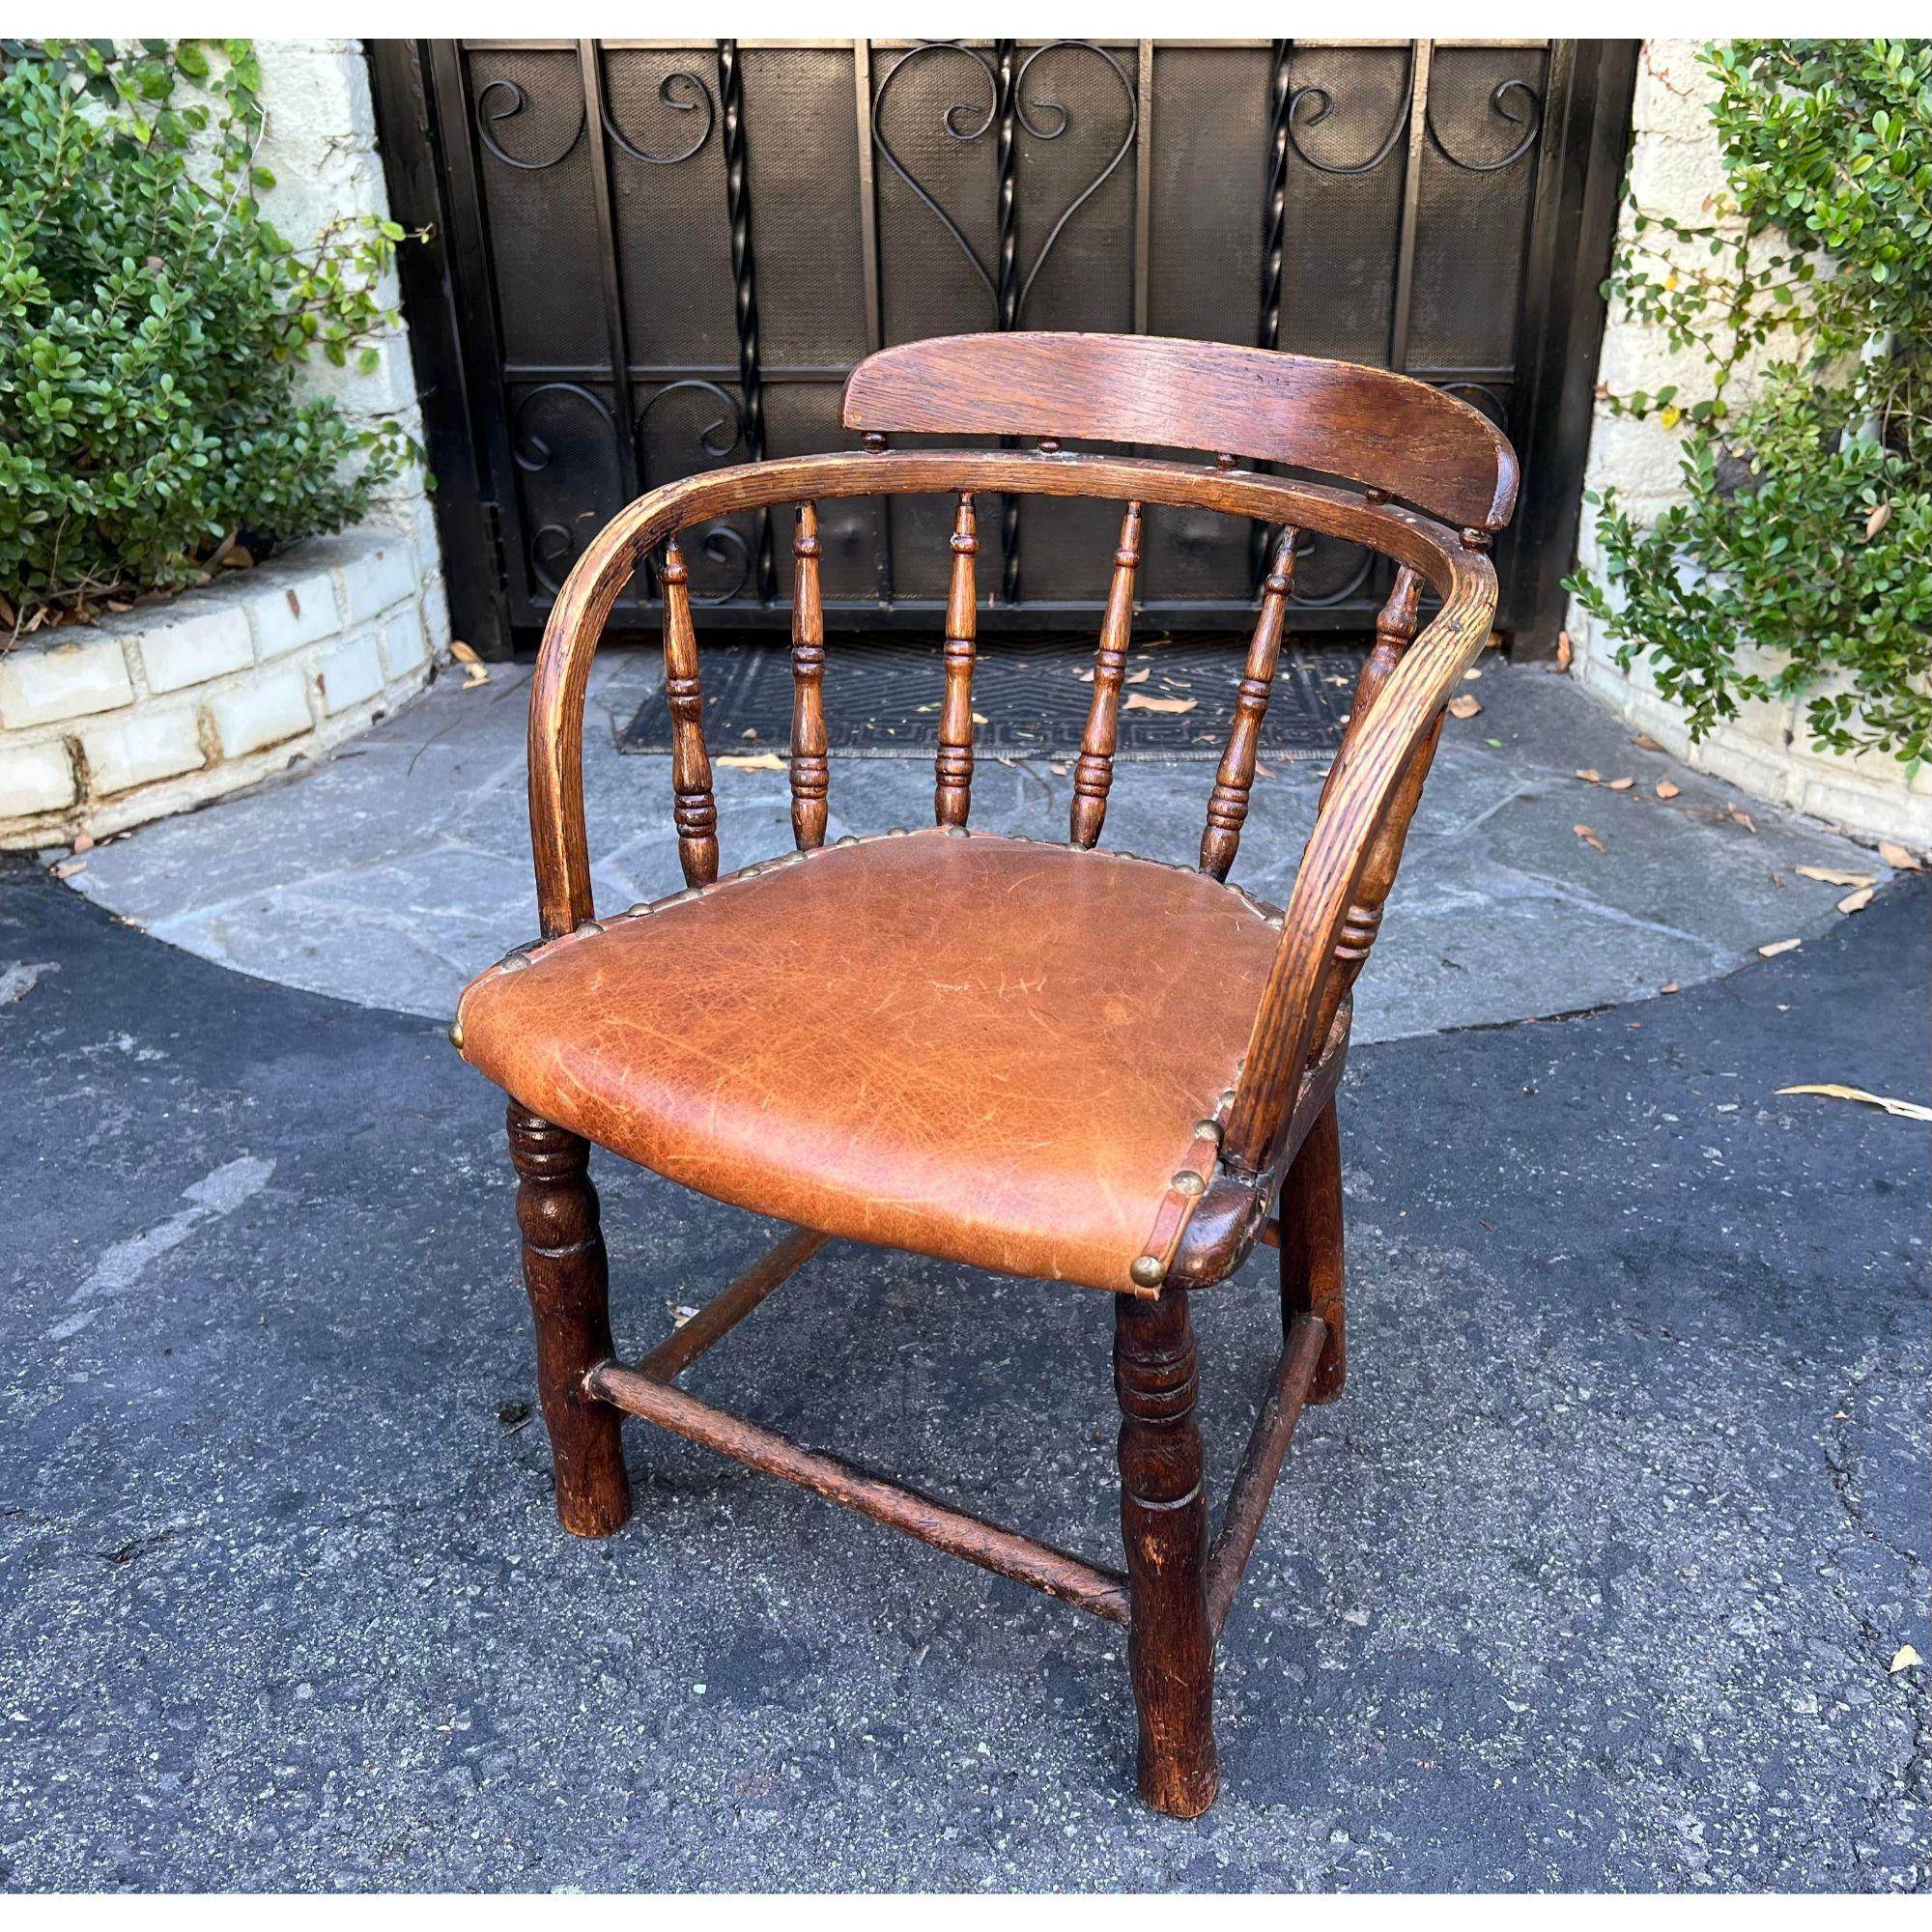 Antique chaise d'enfant Windsor Barrel avec siège en cuir. C'est un exemple très inhabituel avec une belle patine et un siège en cuir véritable.

Informations complémentaires : 
Matériaux : Cuir
Couleur : marron
Période : 19ème siècle
Styles :